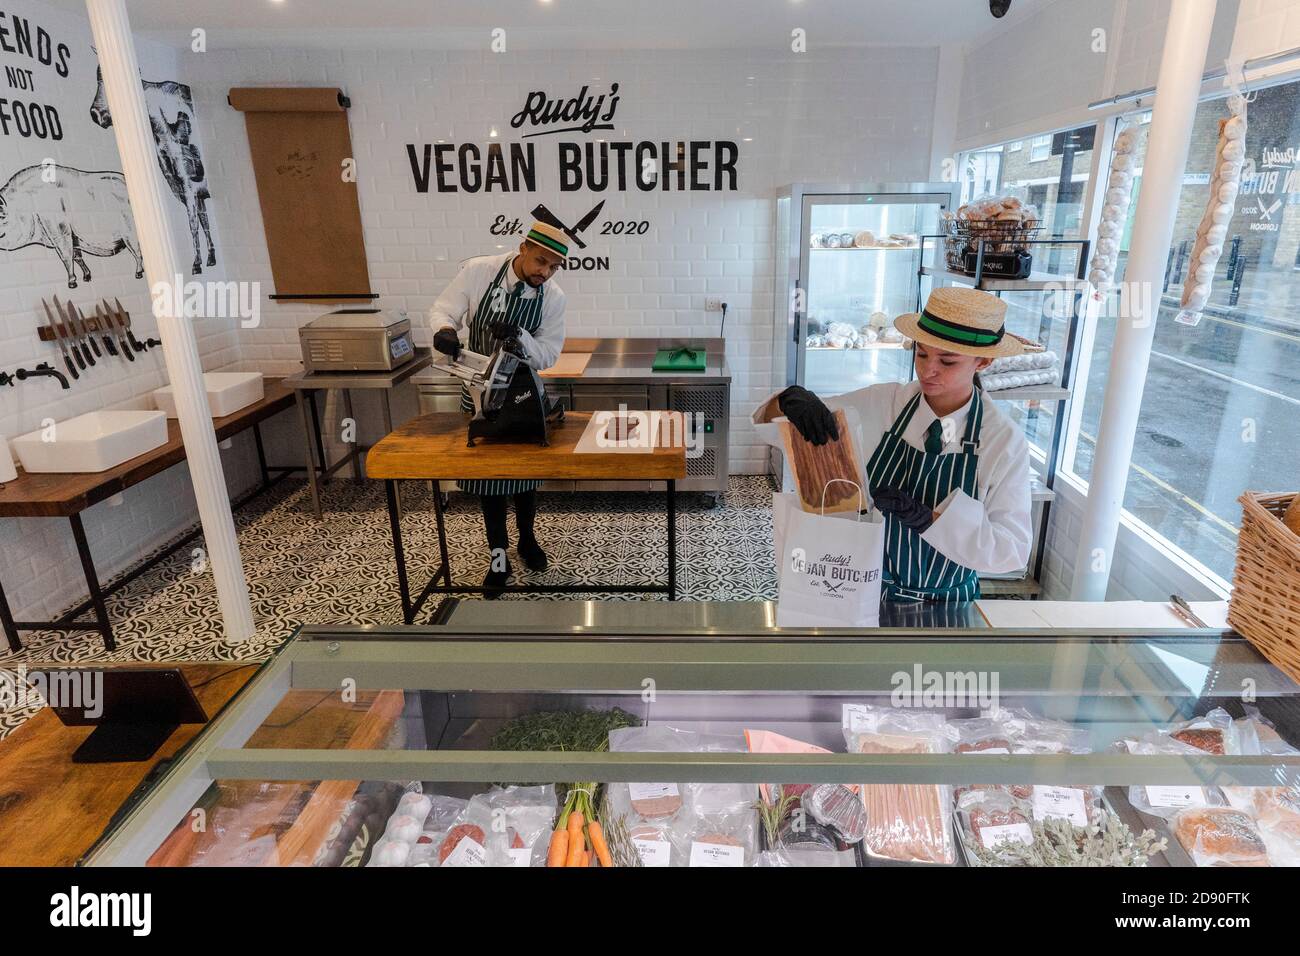 Le Stafff at Rudys Vega Butcher Delicatessen ouvre à Islington Londres. Banque D'Images